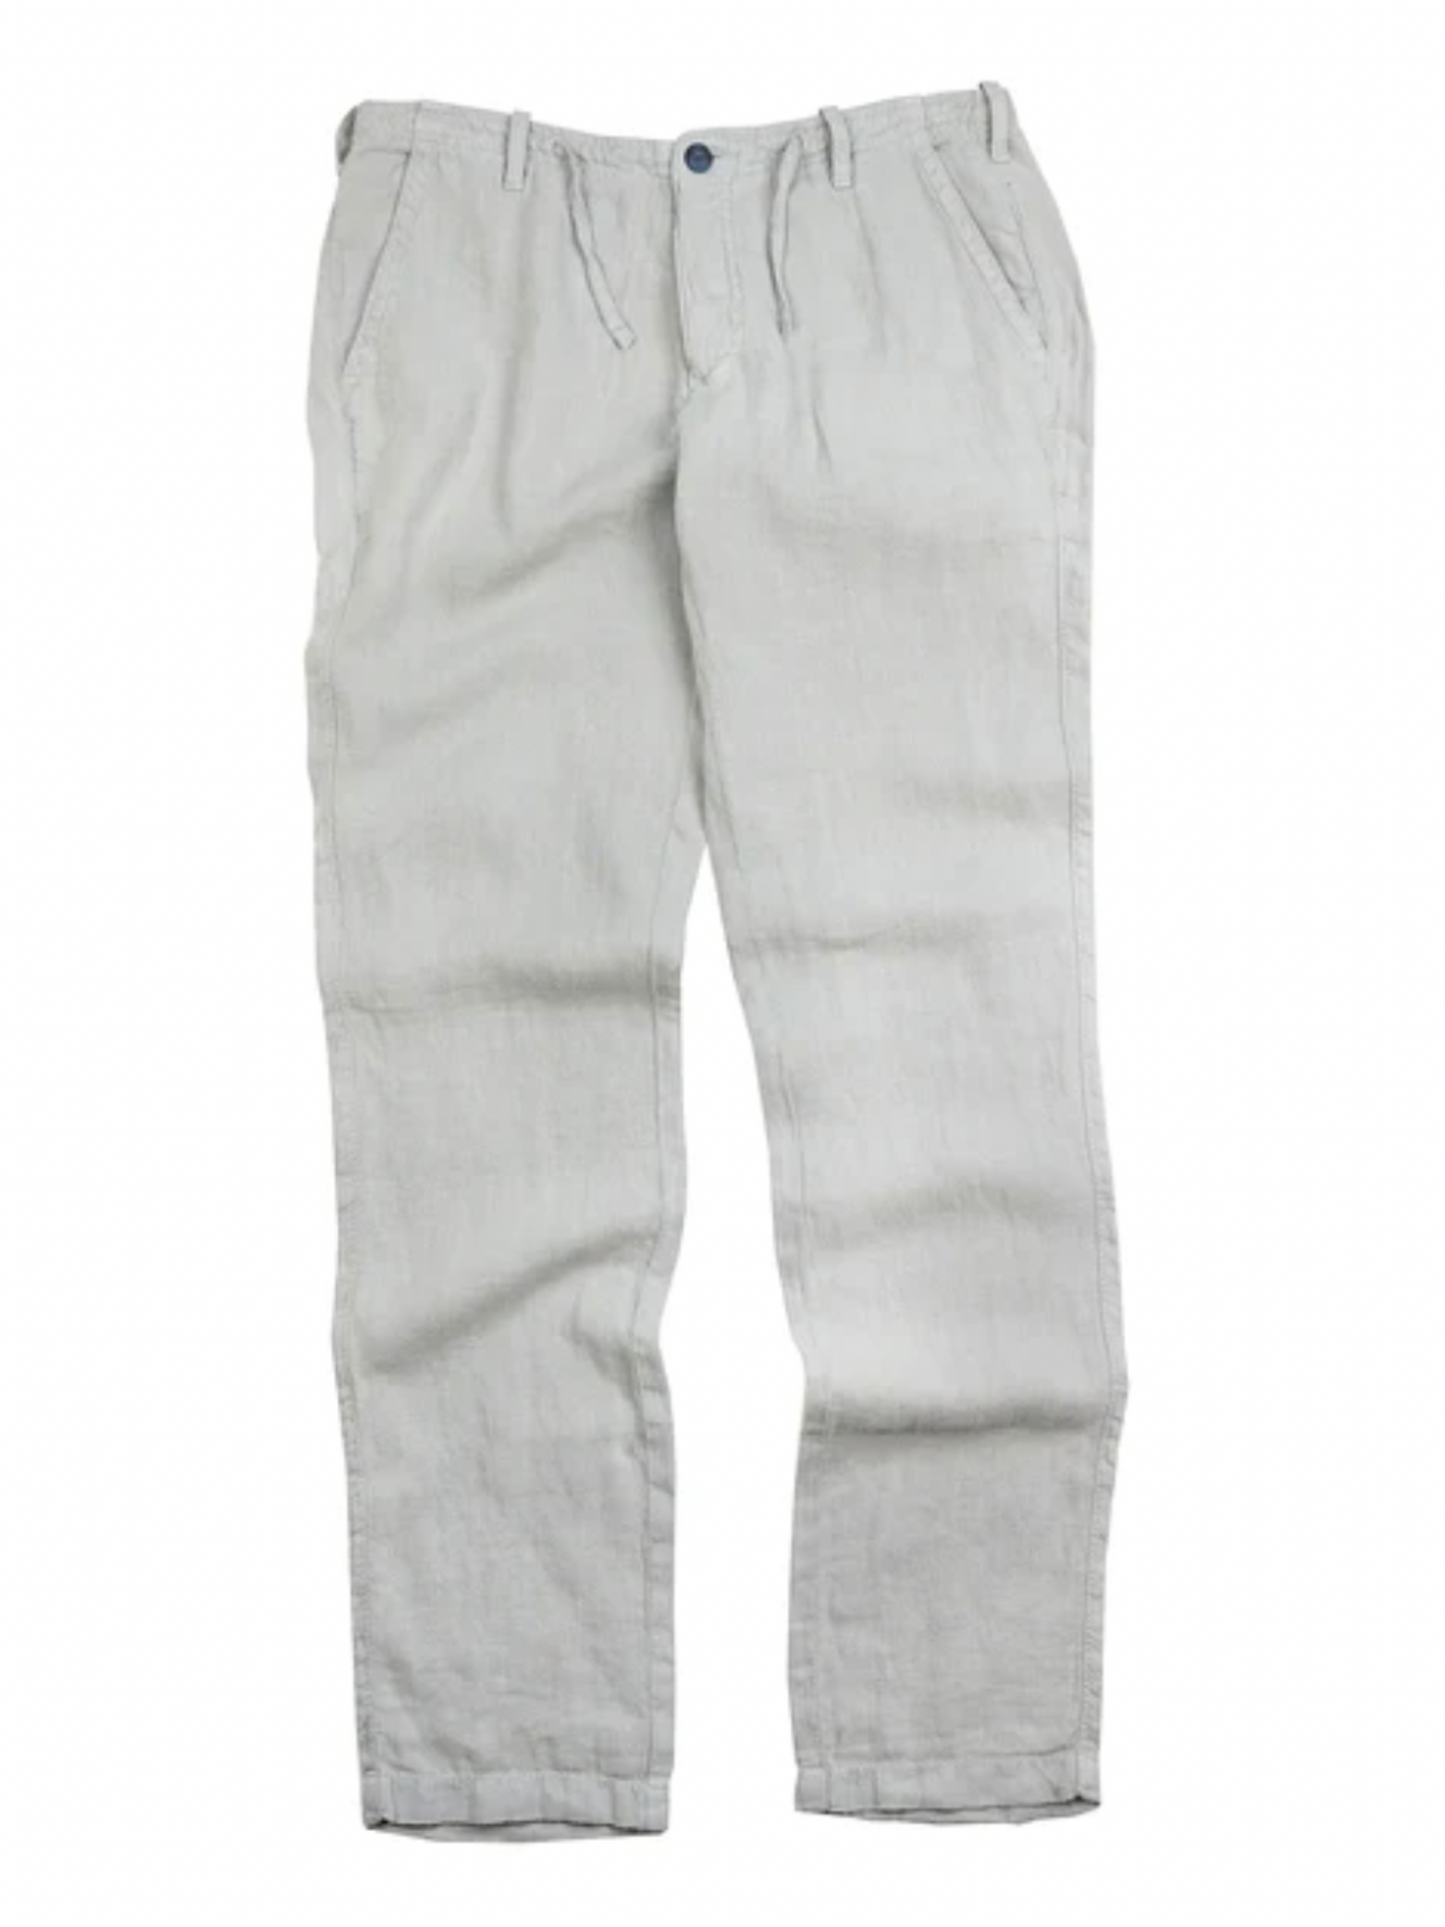 Key West Linen Pants